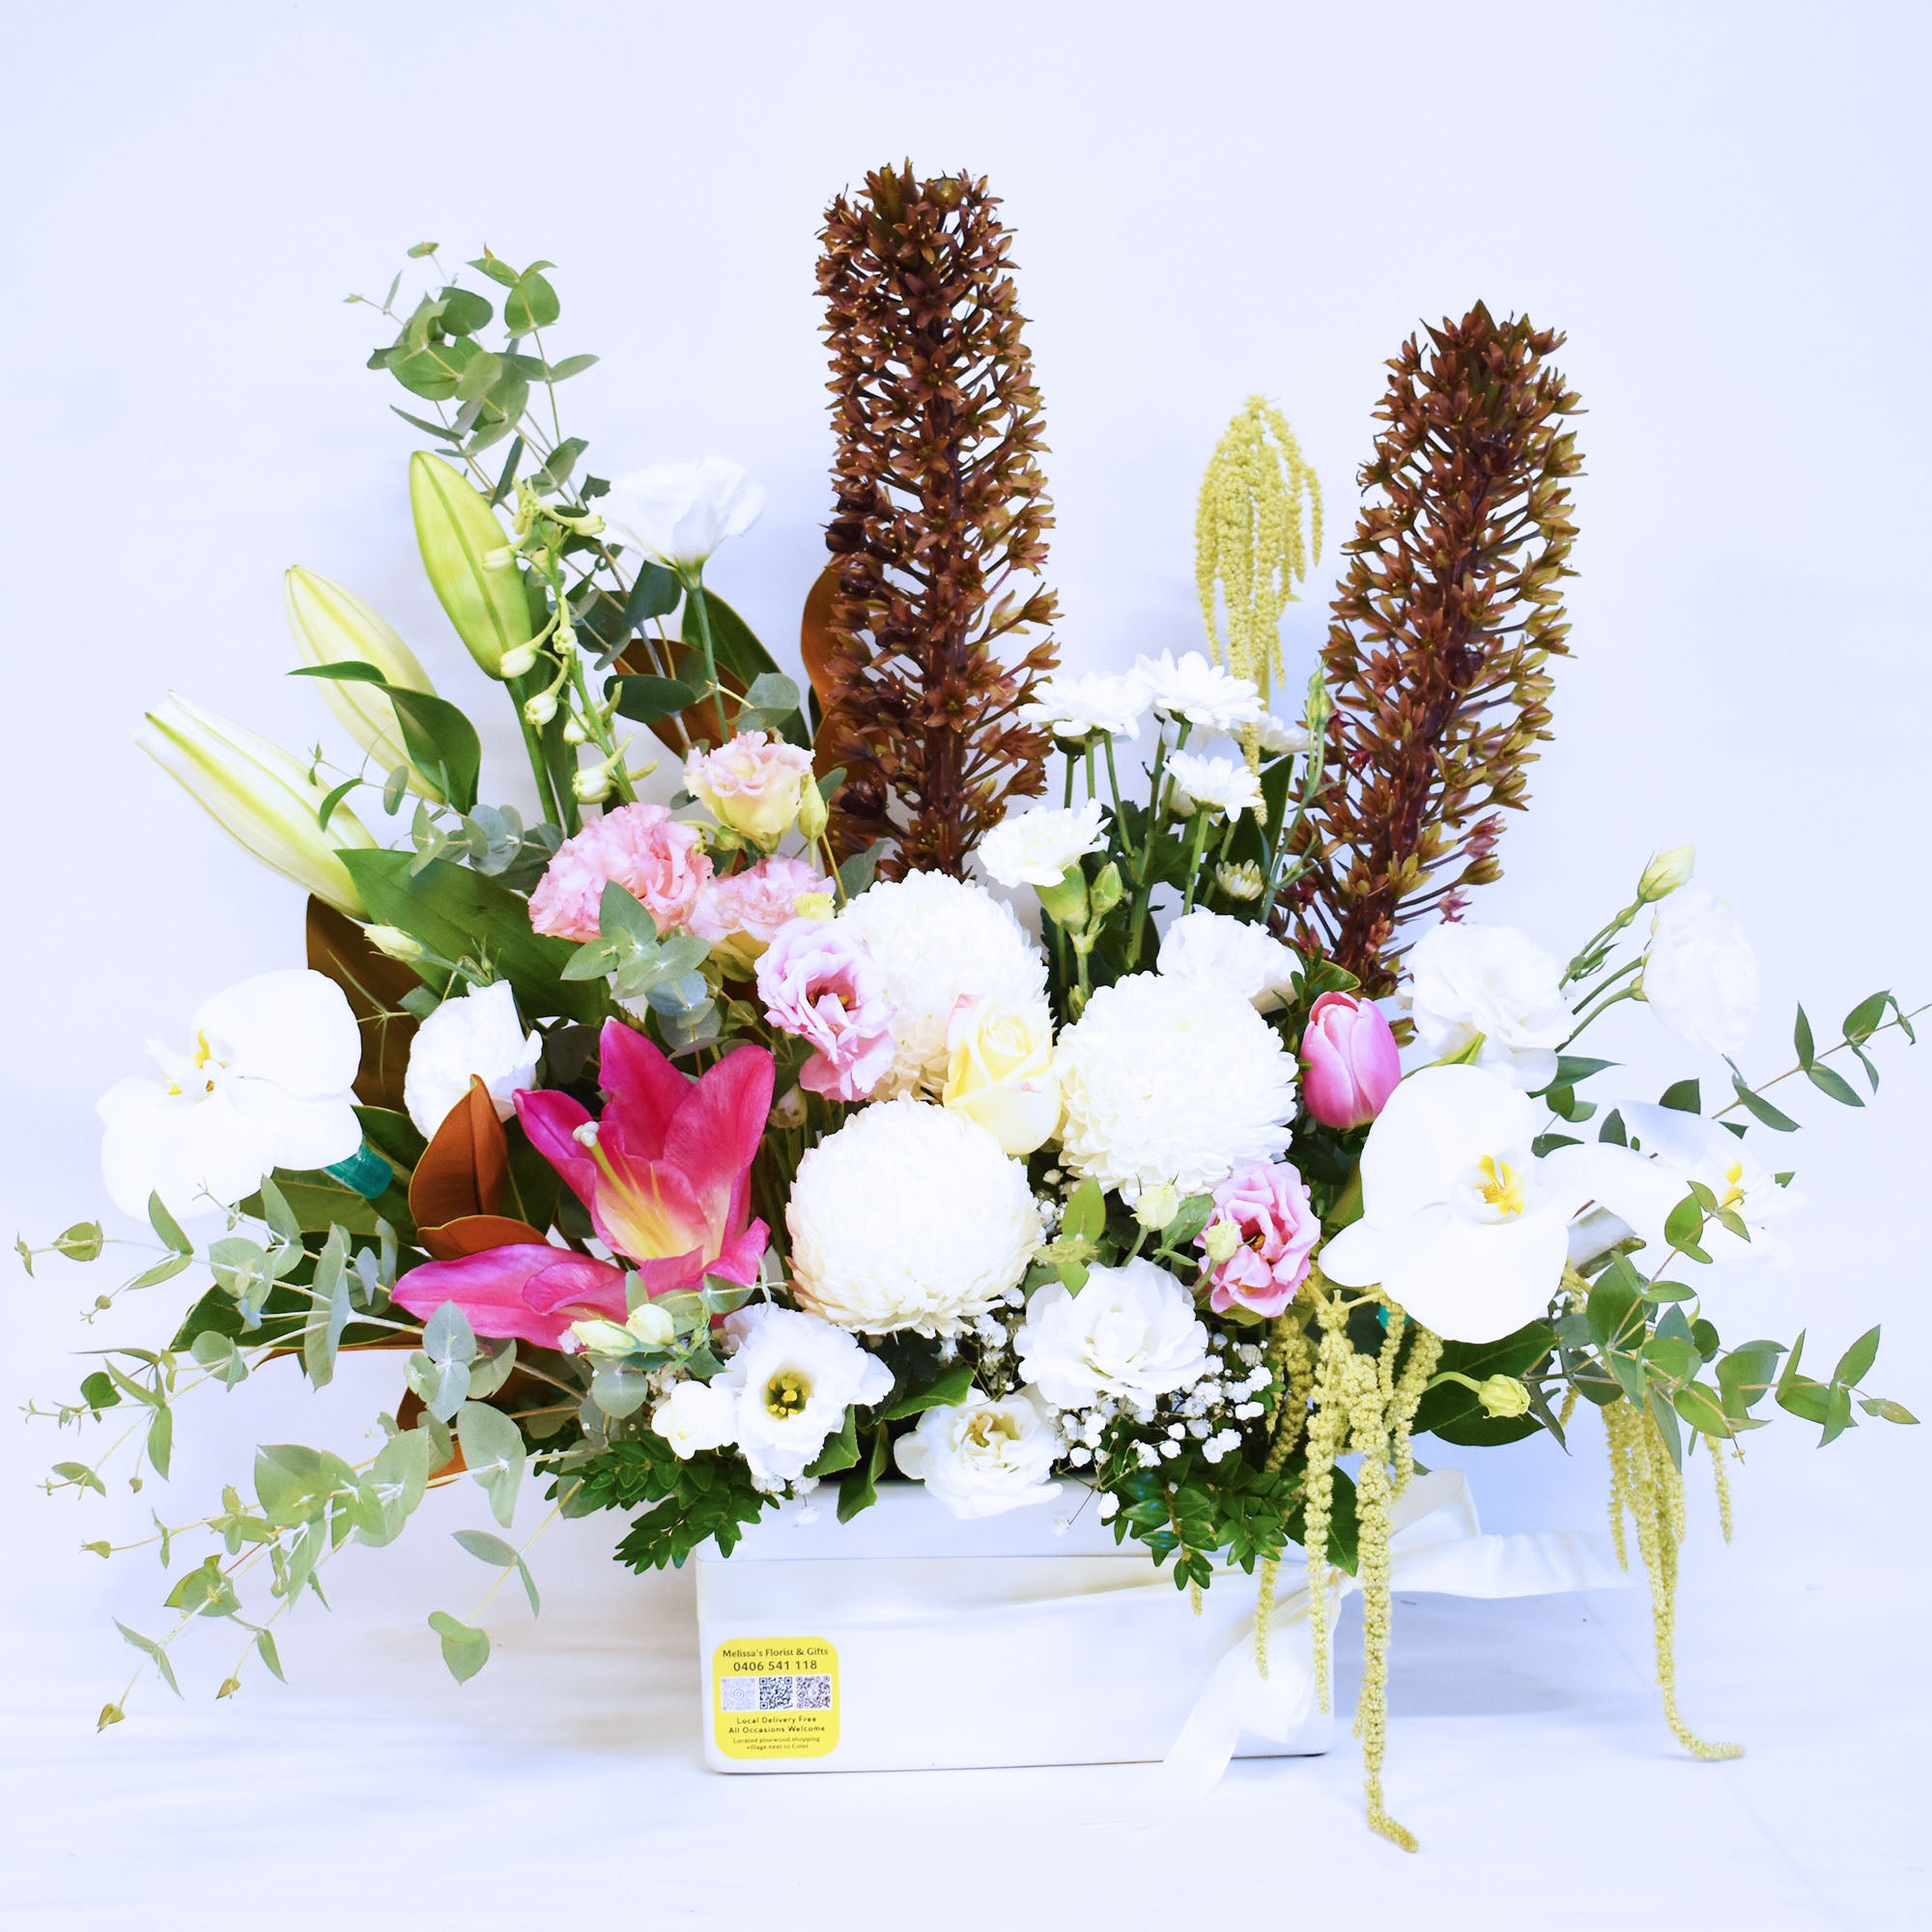 Florist's Premium Spring Blossoms + Ceramic Pot!